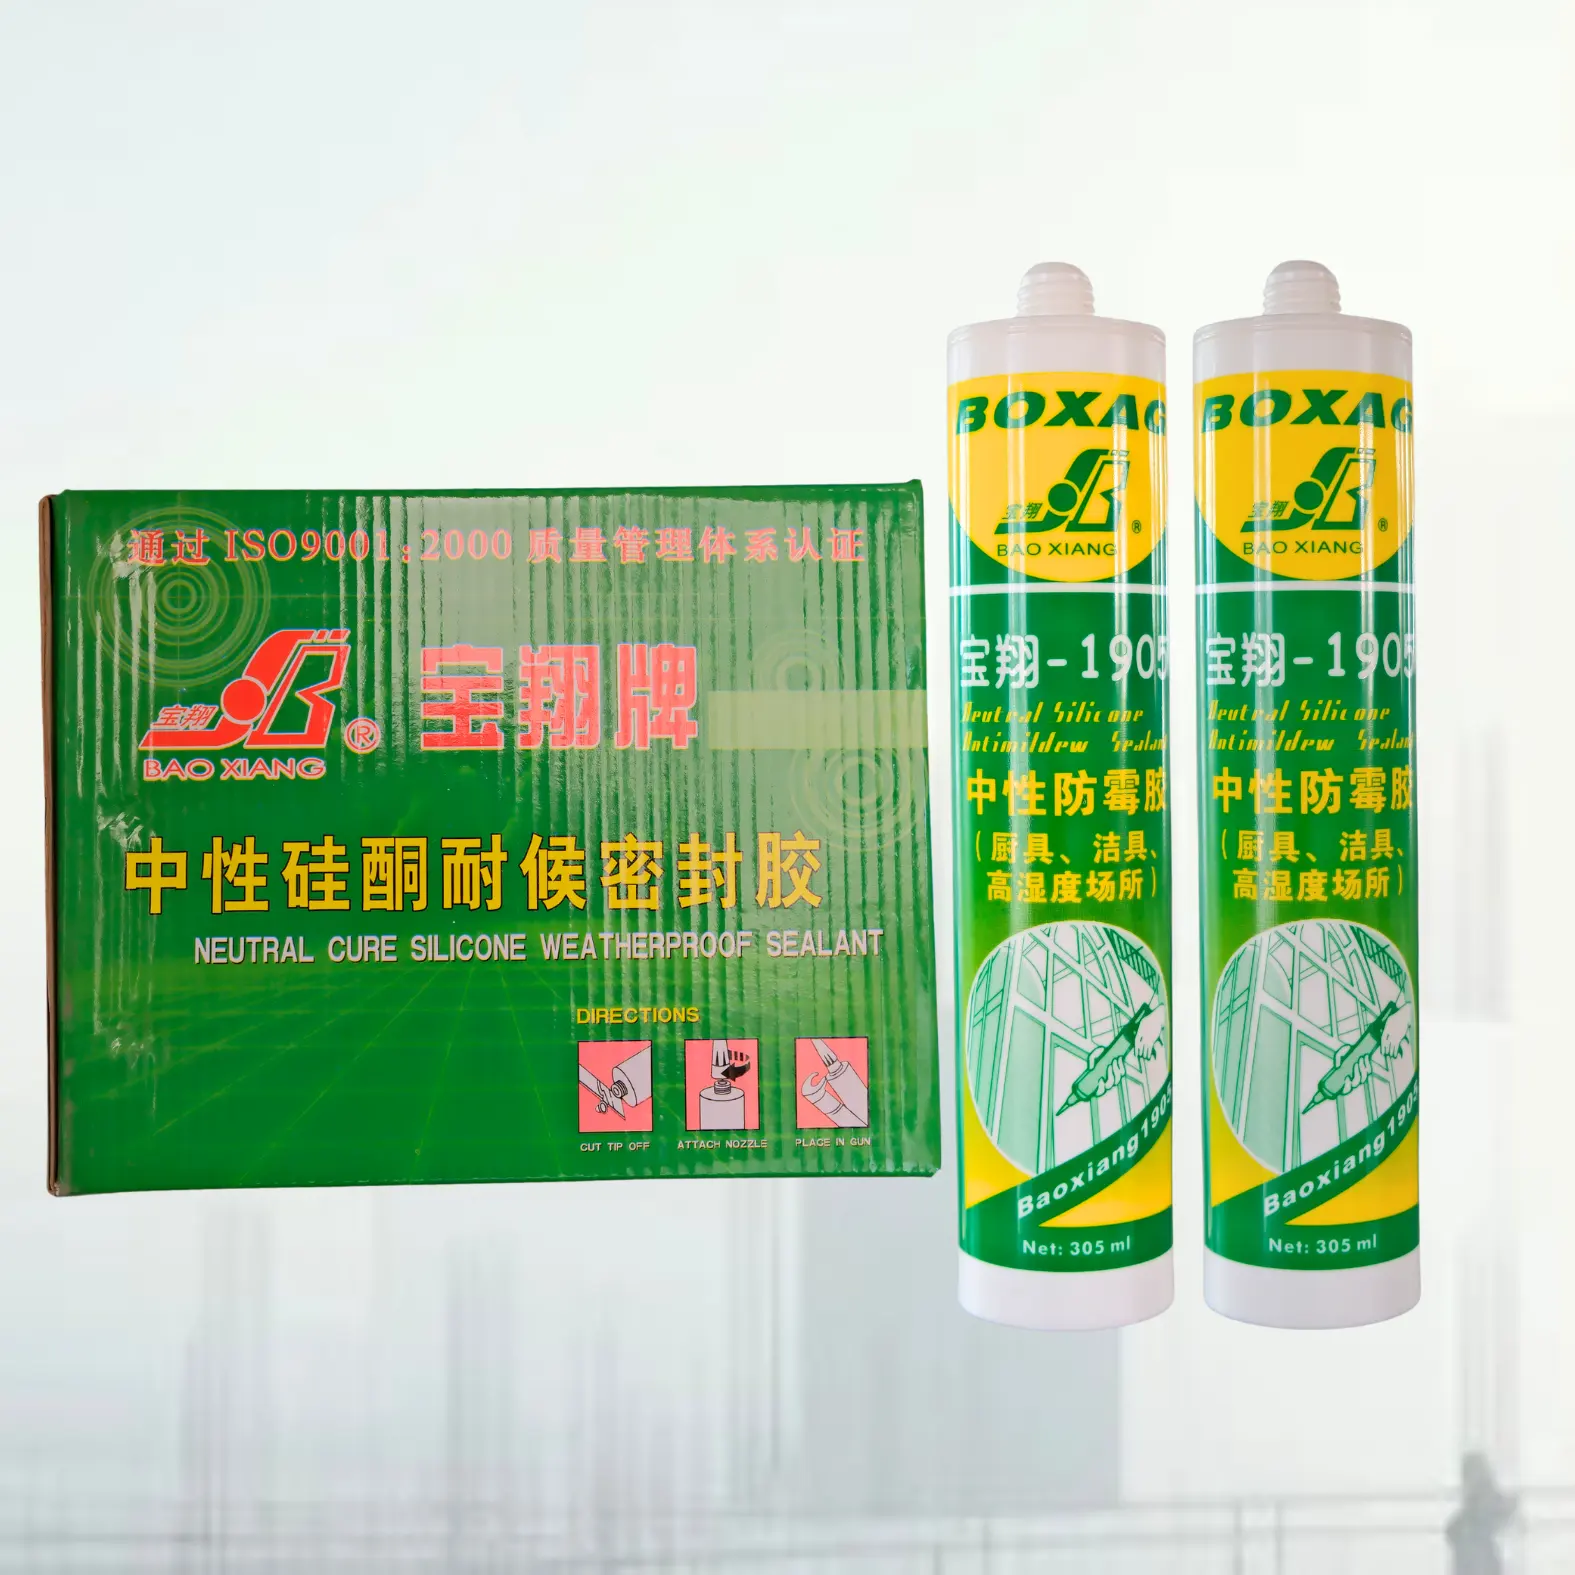 300ml axit 100% Silicone sealant không độc hại không thấm nước Mastic Sealant cho kính cửa sổ tường xi măng dính & Sealant sản phẩm